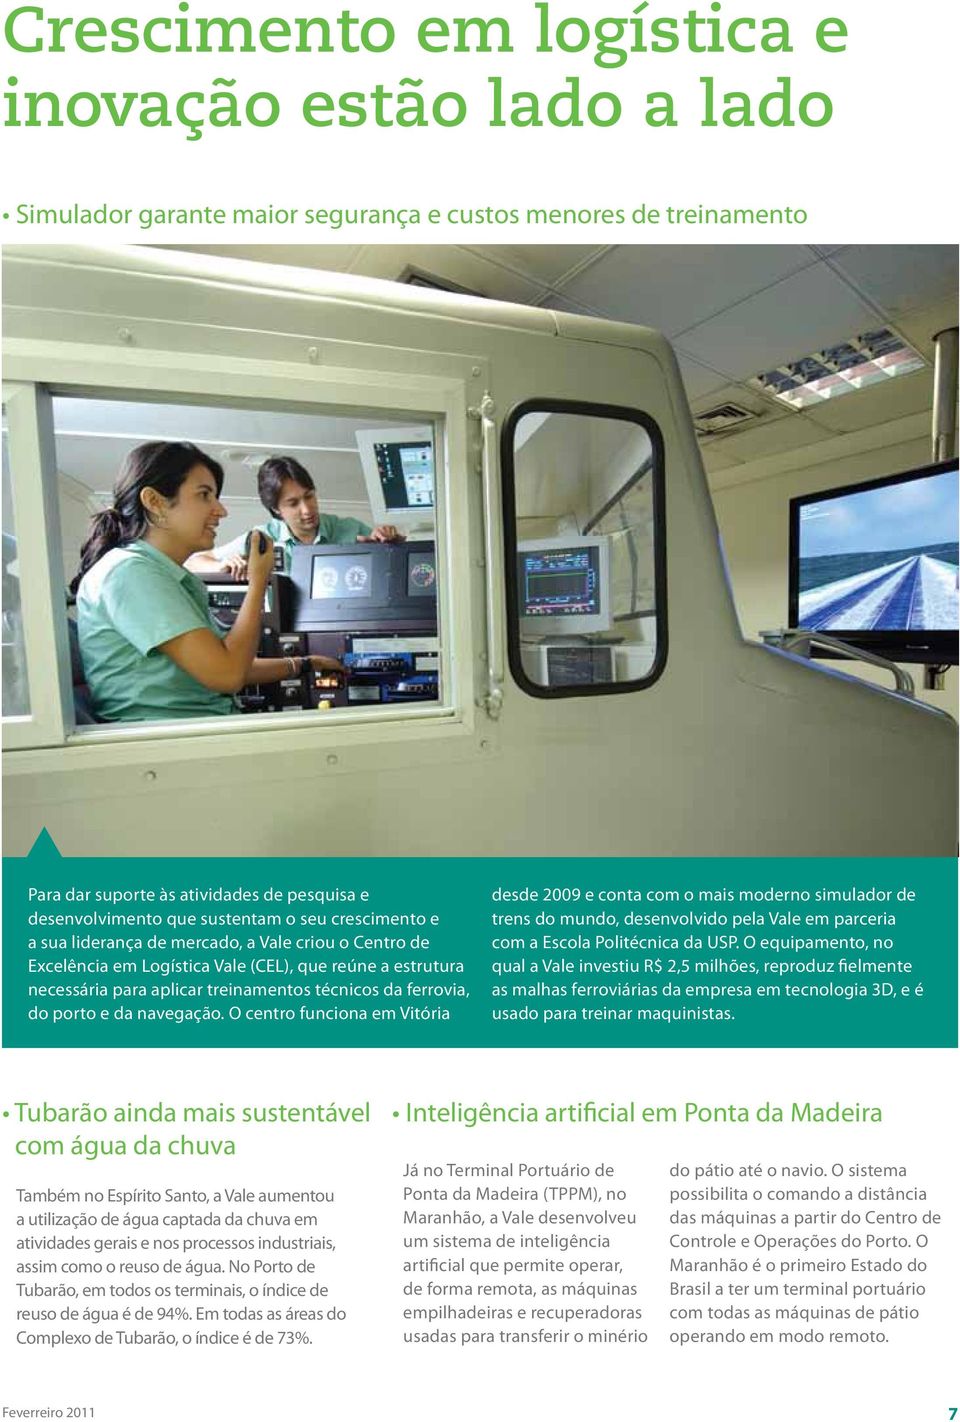 da navegação. O centro funciona em Vitória desde 2009 e conta com o mais moderno simulador de trens do mundo, desenvolvido pela Vale em parceria com a Escola Politécnica da USP.